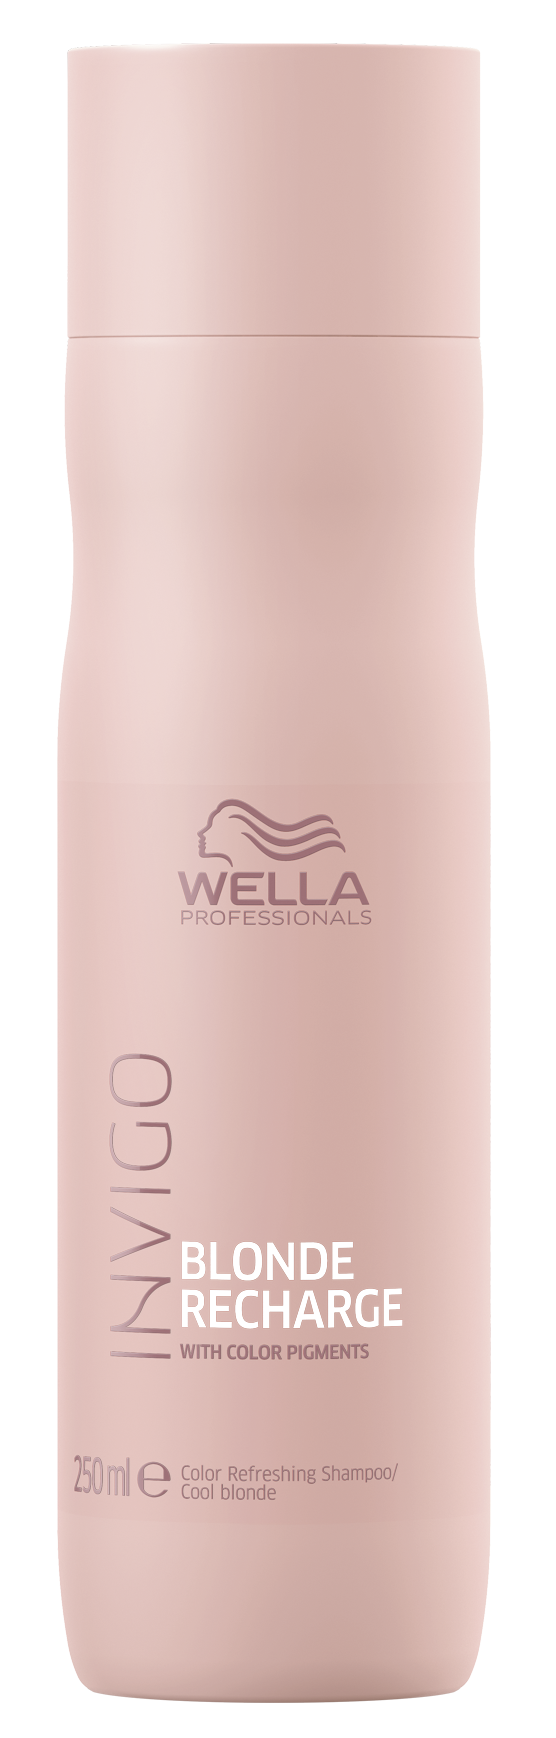 помпа универсальная для шампуня wella 500 мл WELLA PROFESSIONALS Шампунь-нейтрализатор желтизны для холодных светлых оттенков / Blonde Recharge 250 мл